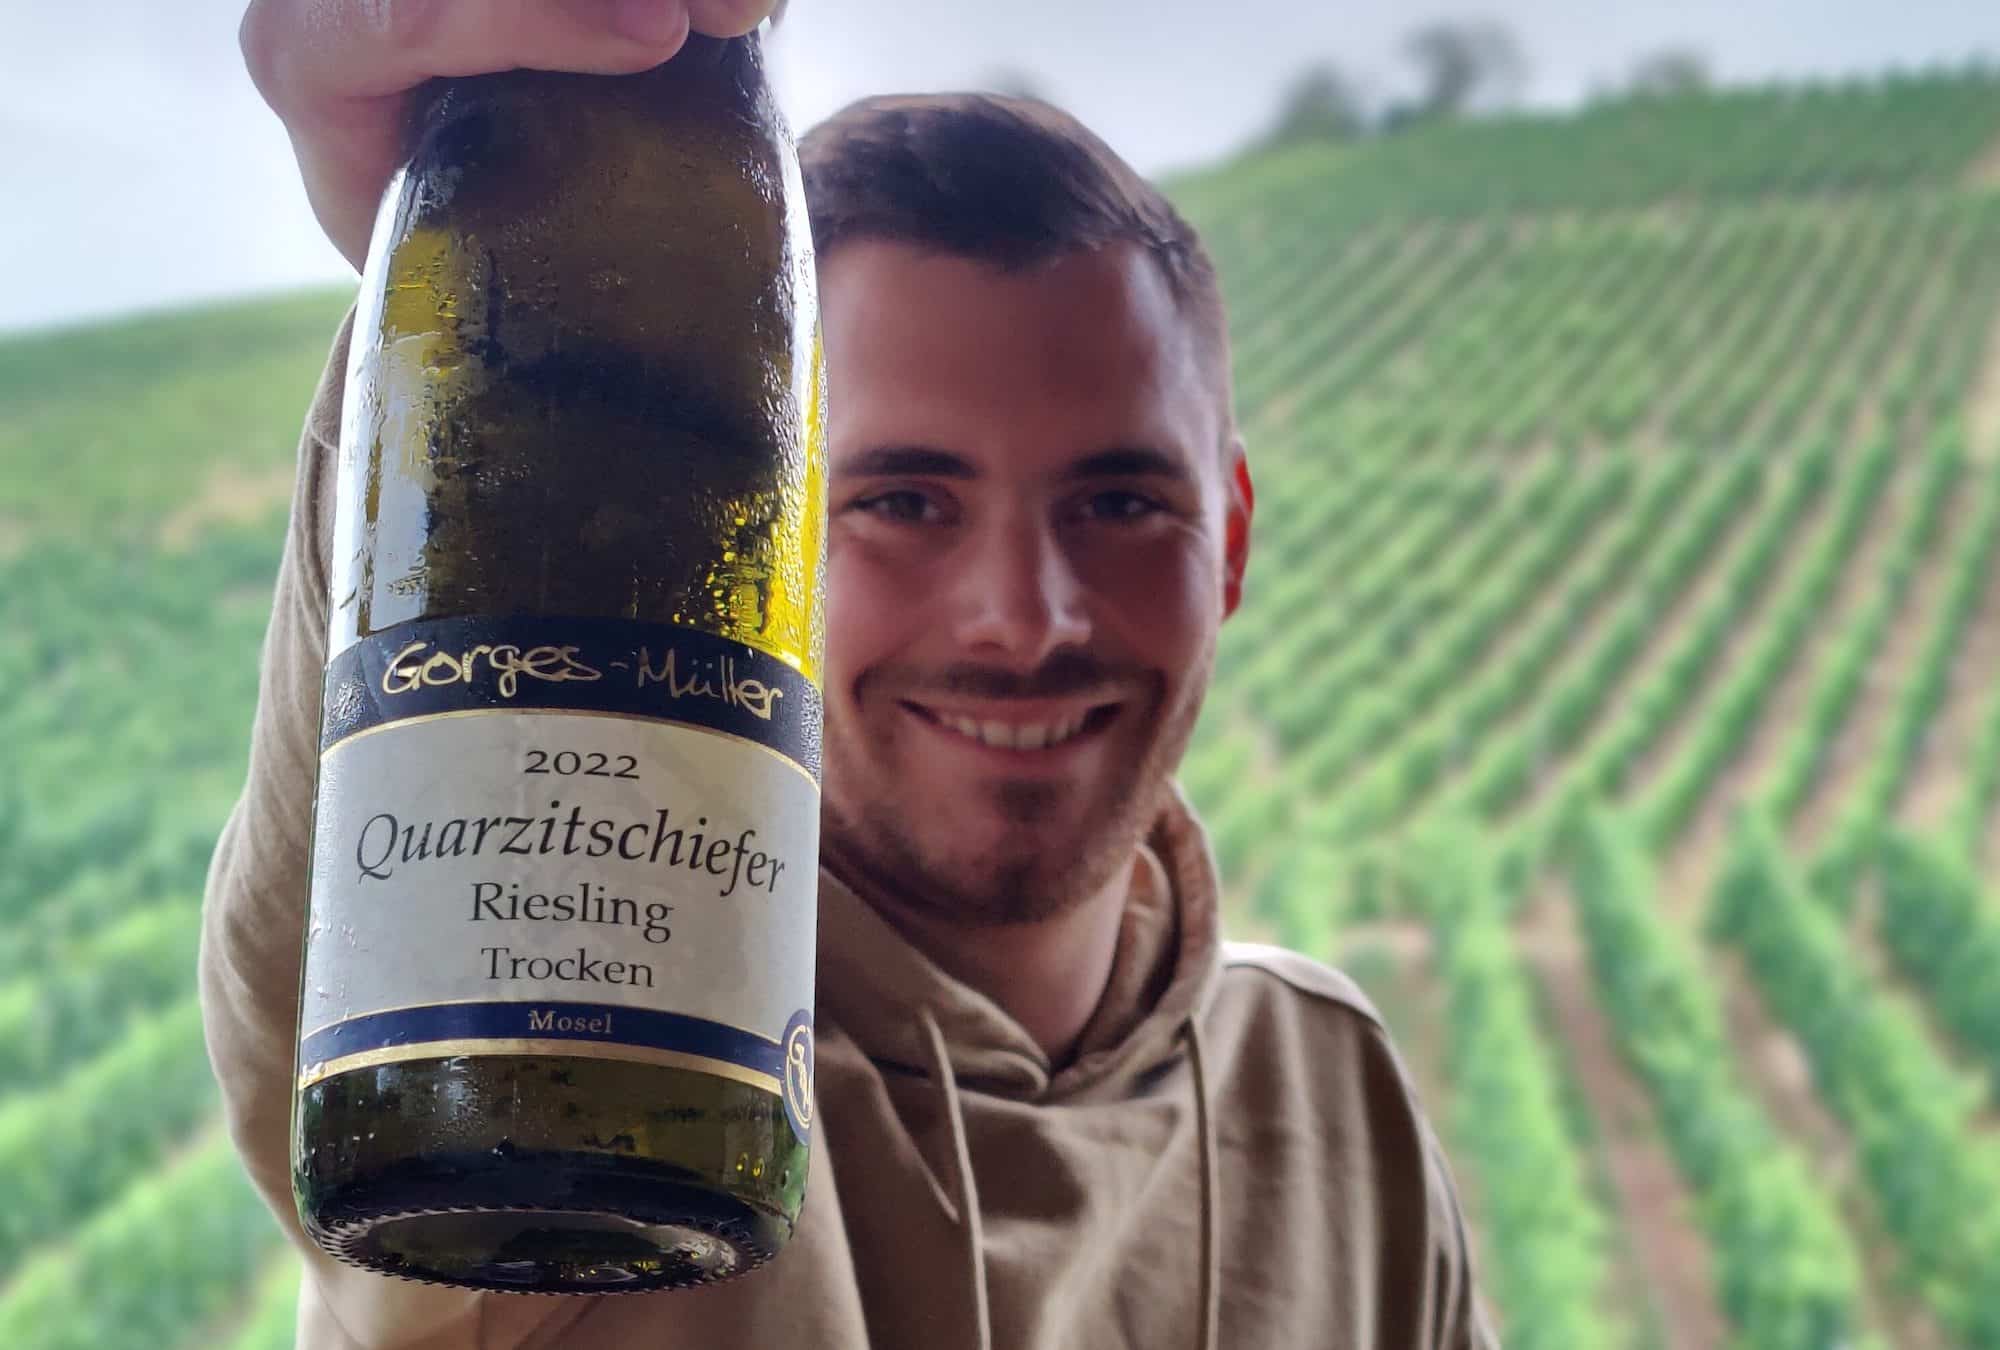 Jungewinzer des Jahres: Martin Müller vom Weingut Gorges-Müller mit einer Flasche Riesling